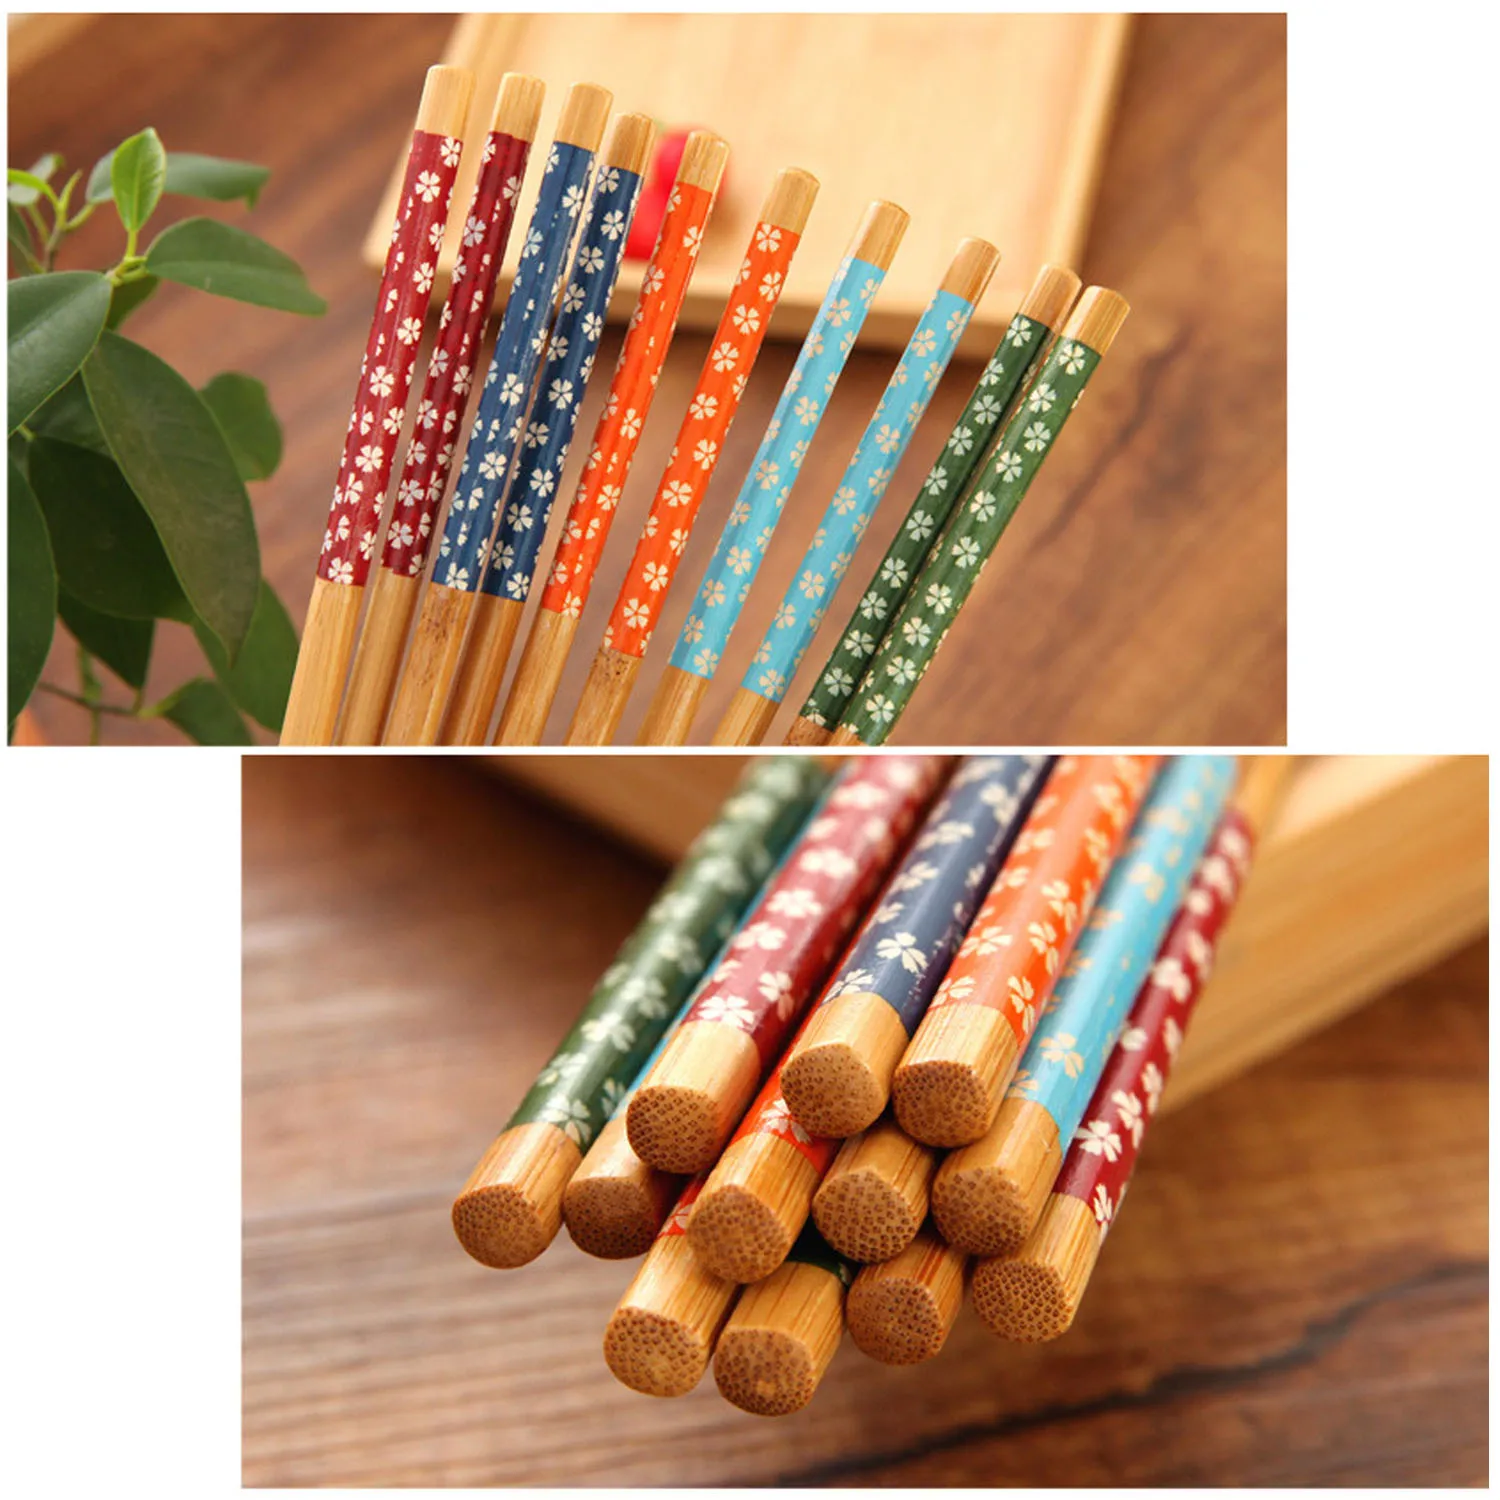 Behogar 10 пар Натуральные Бамбуковые японские палочки для еды гладкая поверхность Нескользящие палочки для суши отбивные палочки кухонные столовые приборы